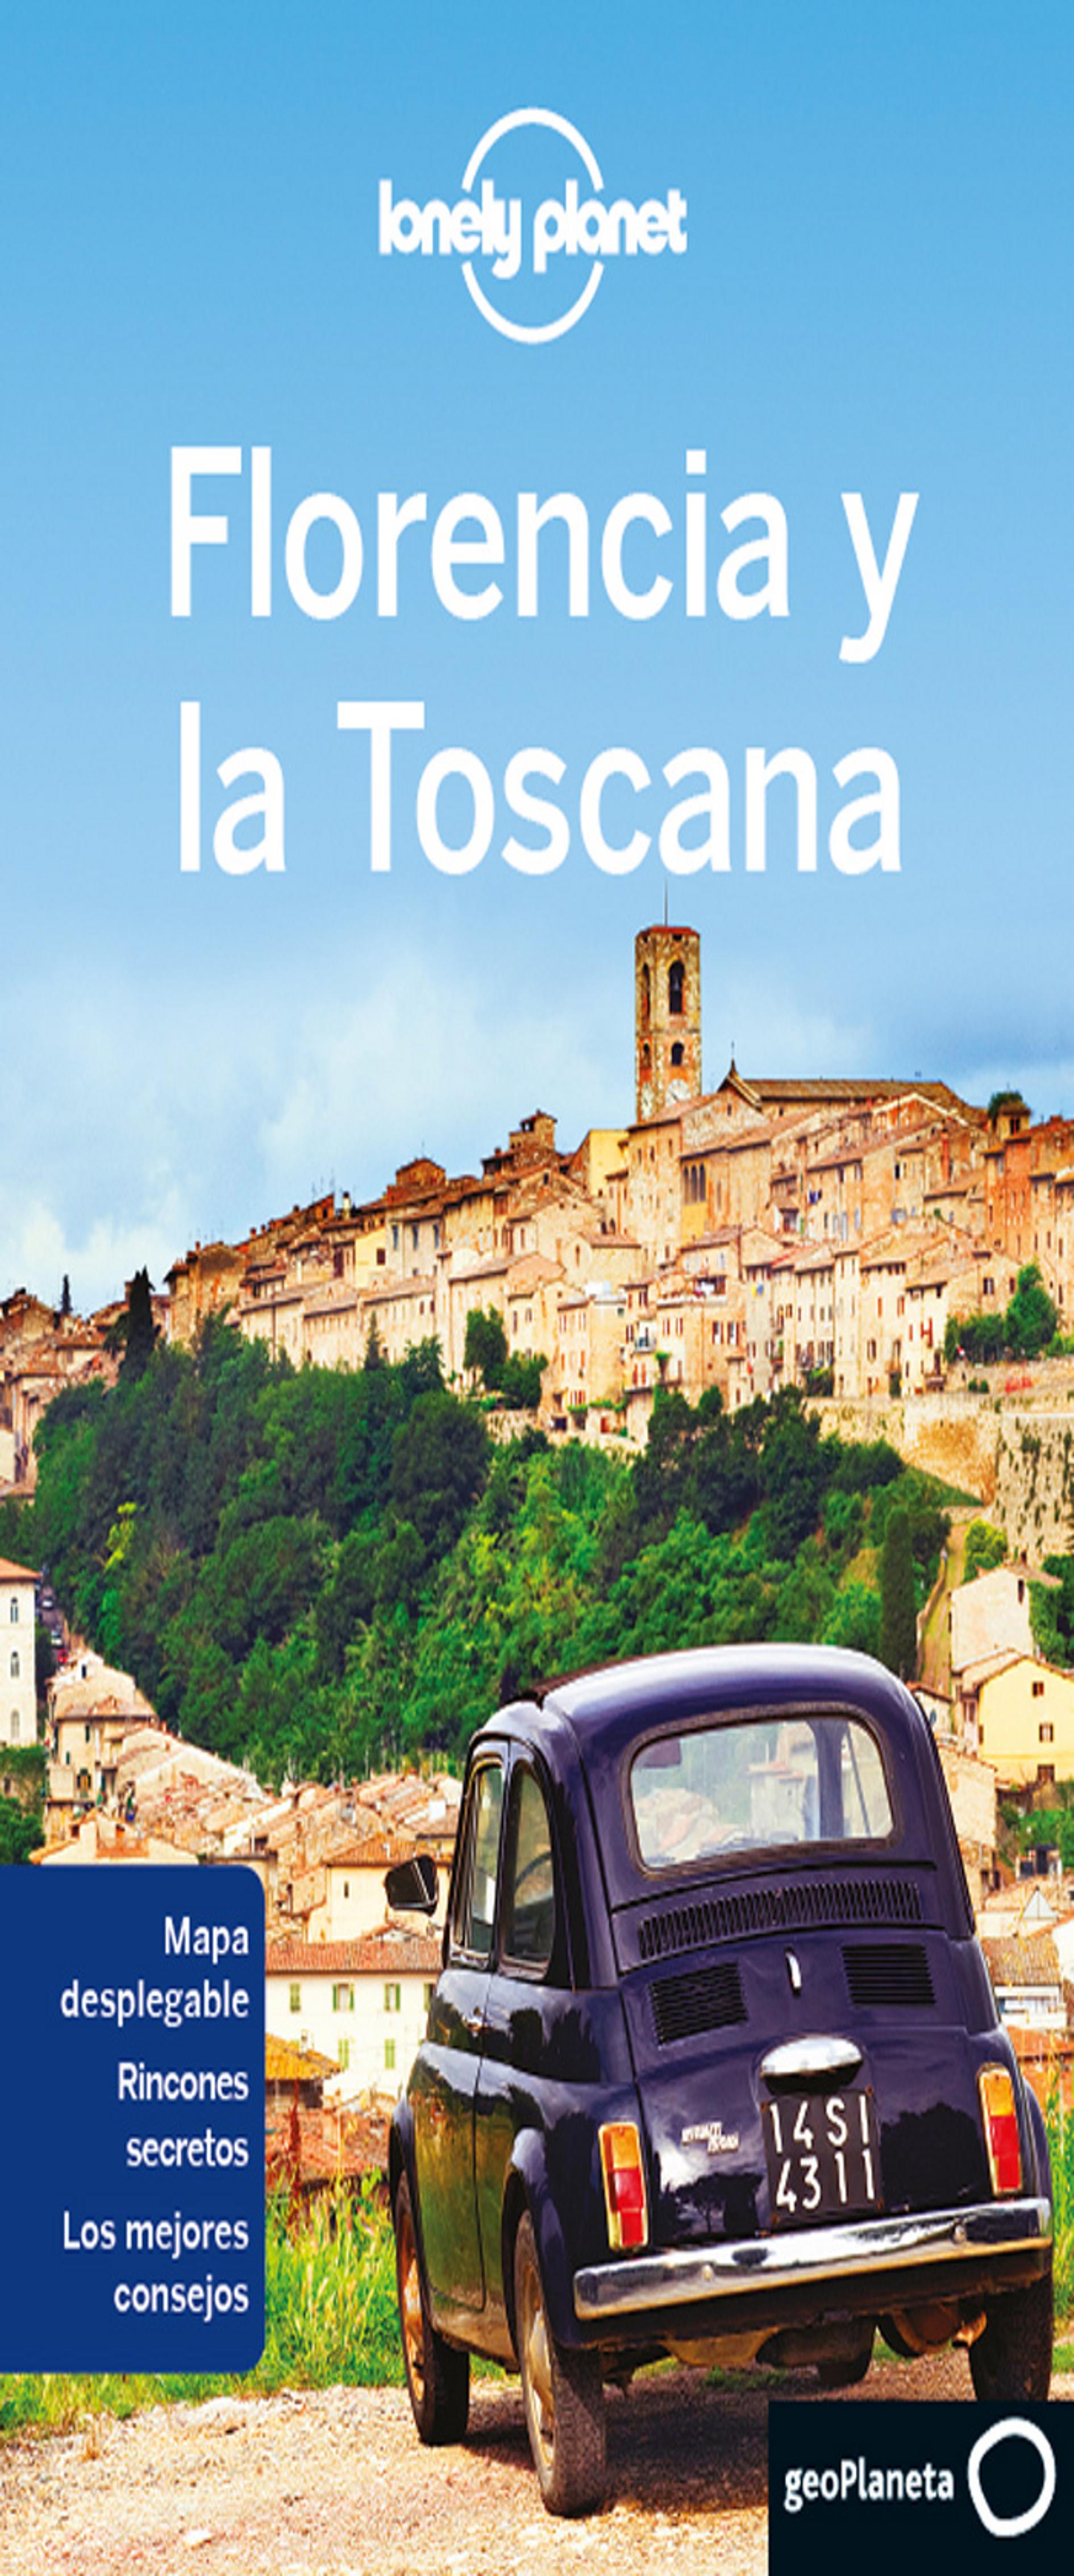 FLORENCIA Y LA TOSCANA - Lonely Planet